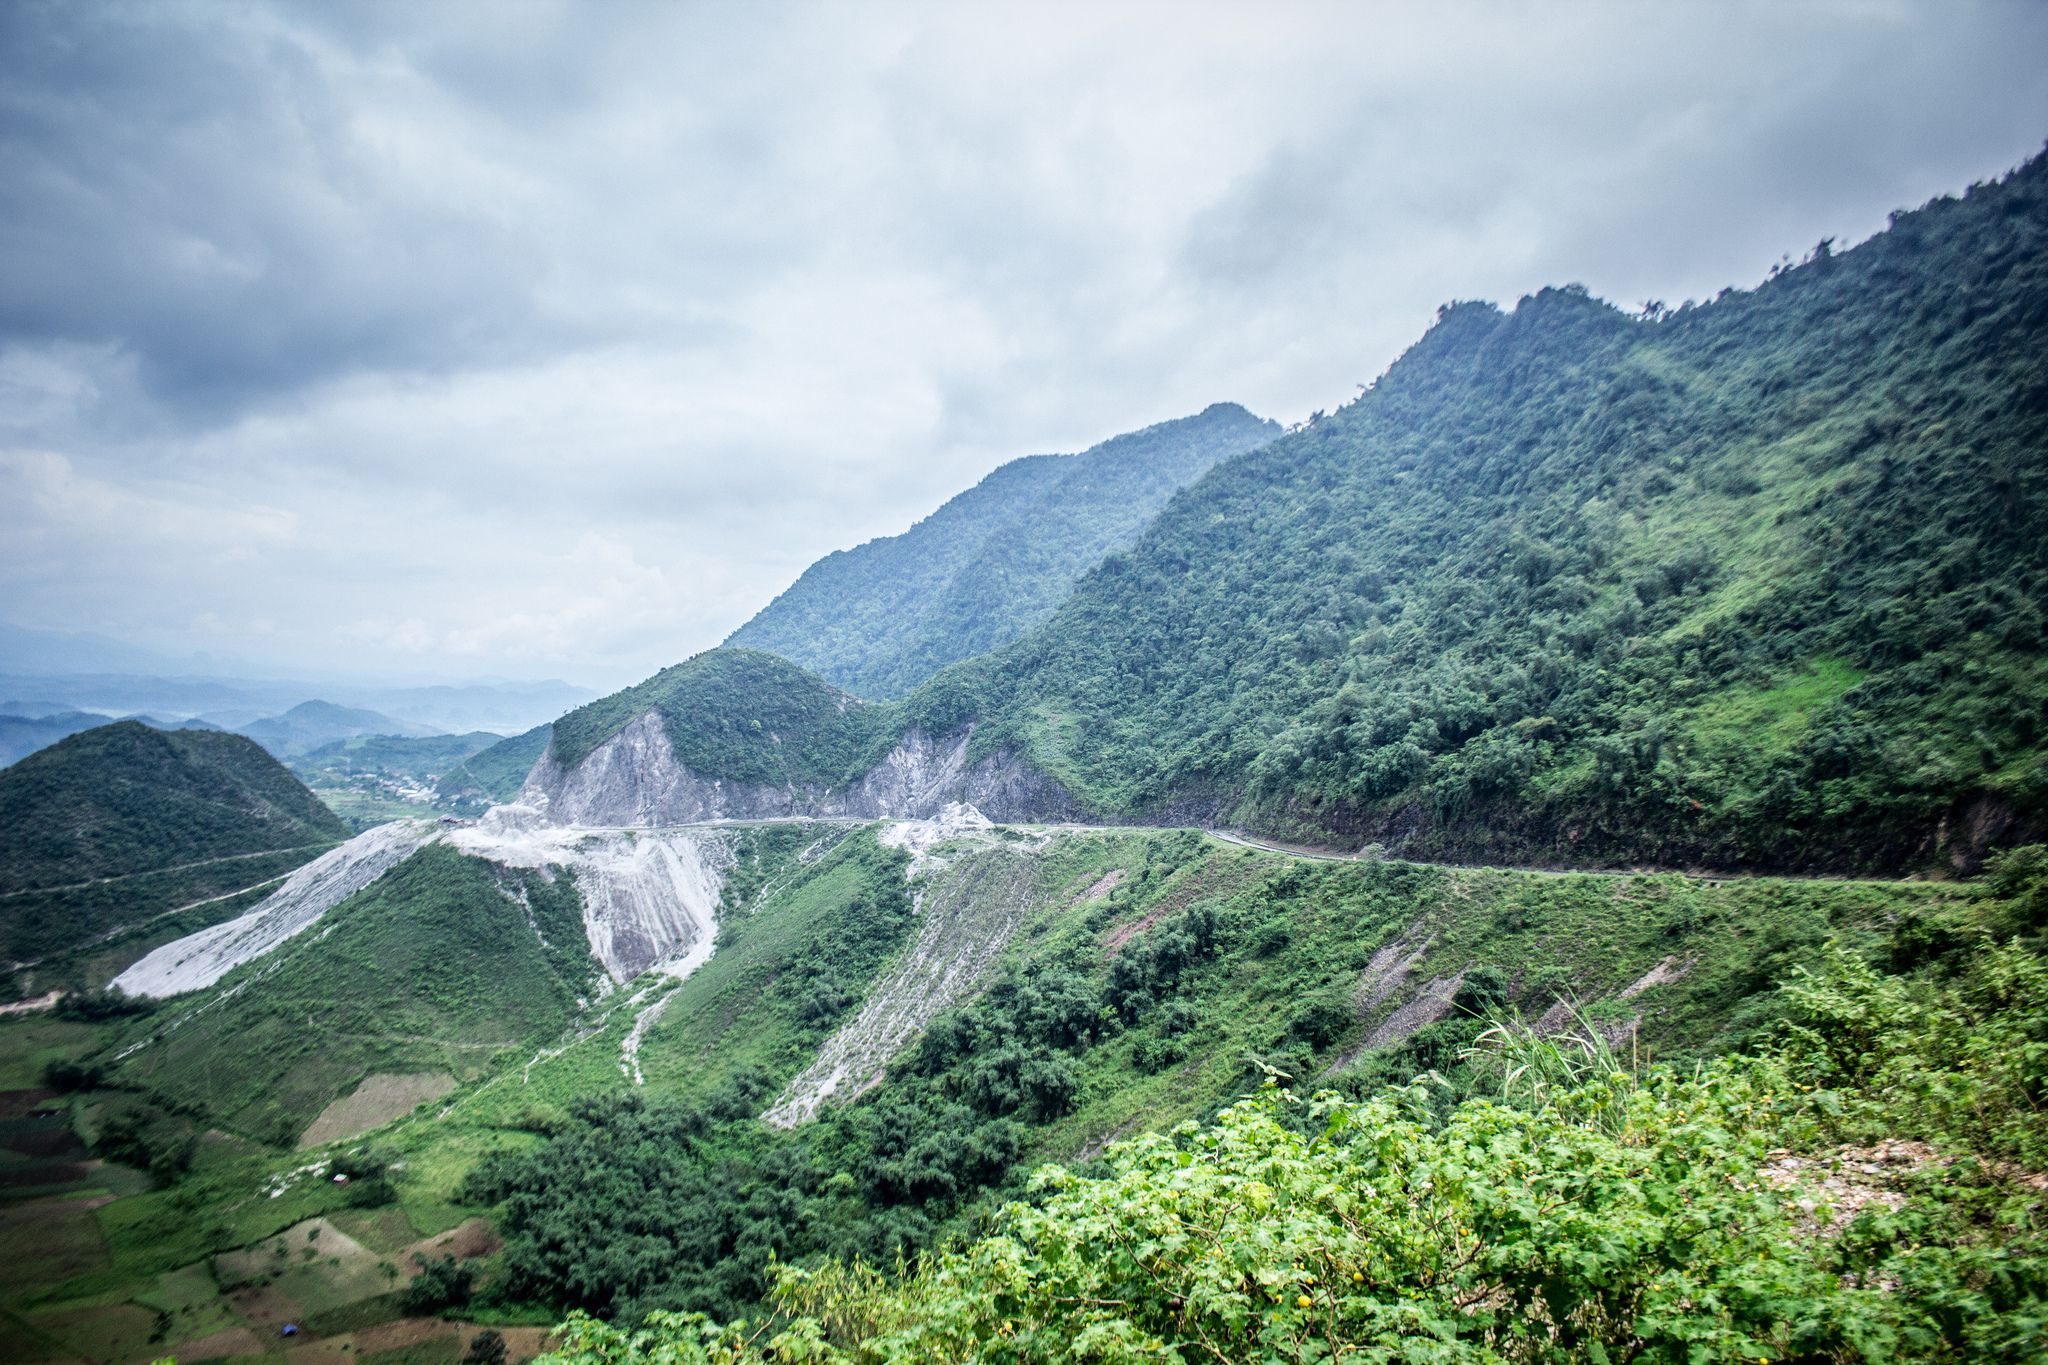 Đèo Thung Khe đi ngang qua những ngọn núi nối tiếp nhau